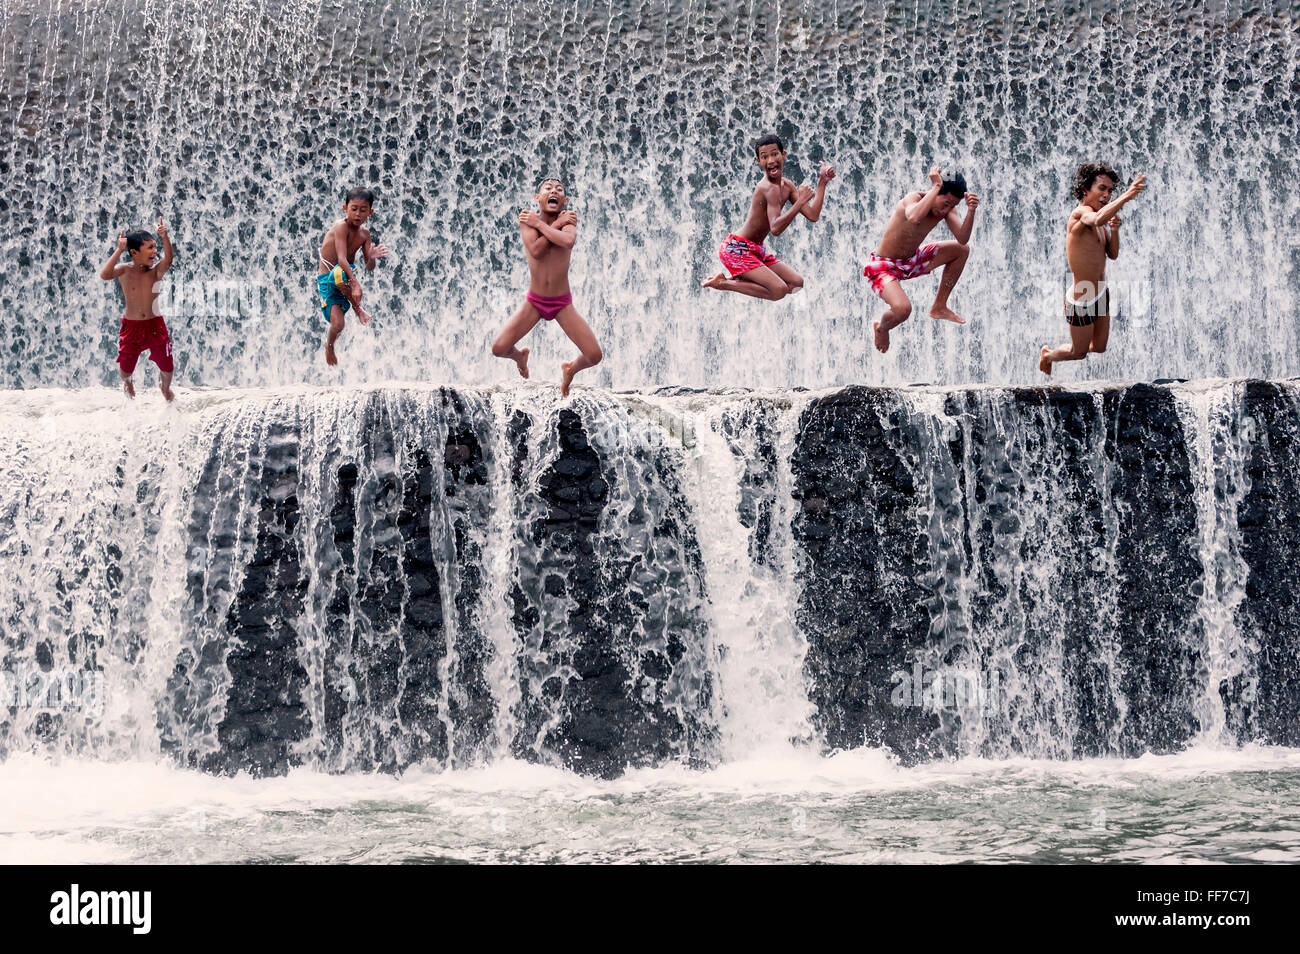 Les garçons sautent dans une cascade et s'amuser, Bali, Indonésie Banque D'Images